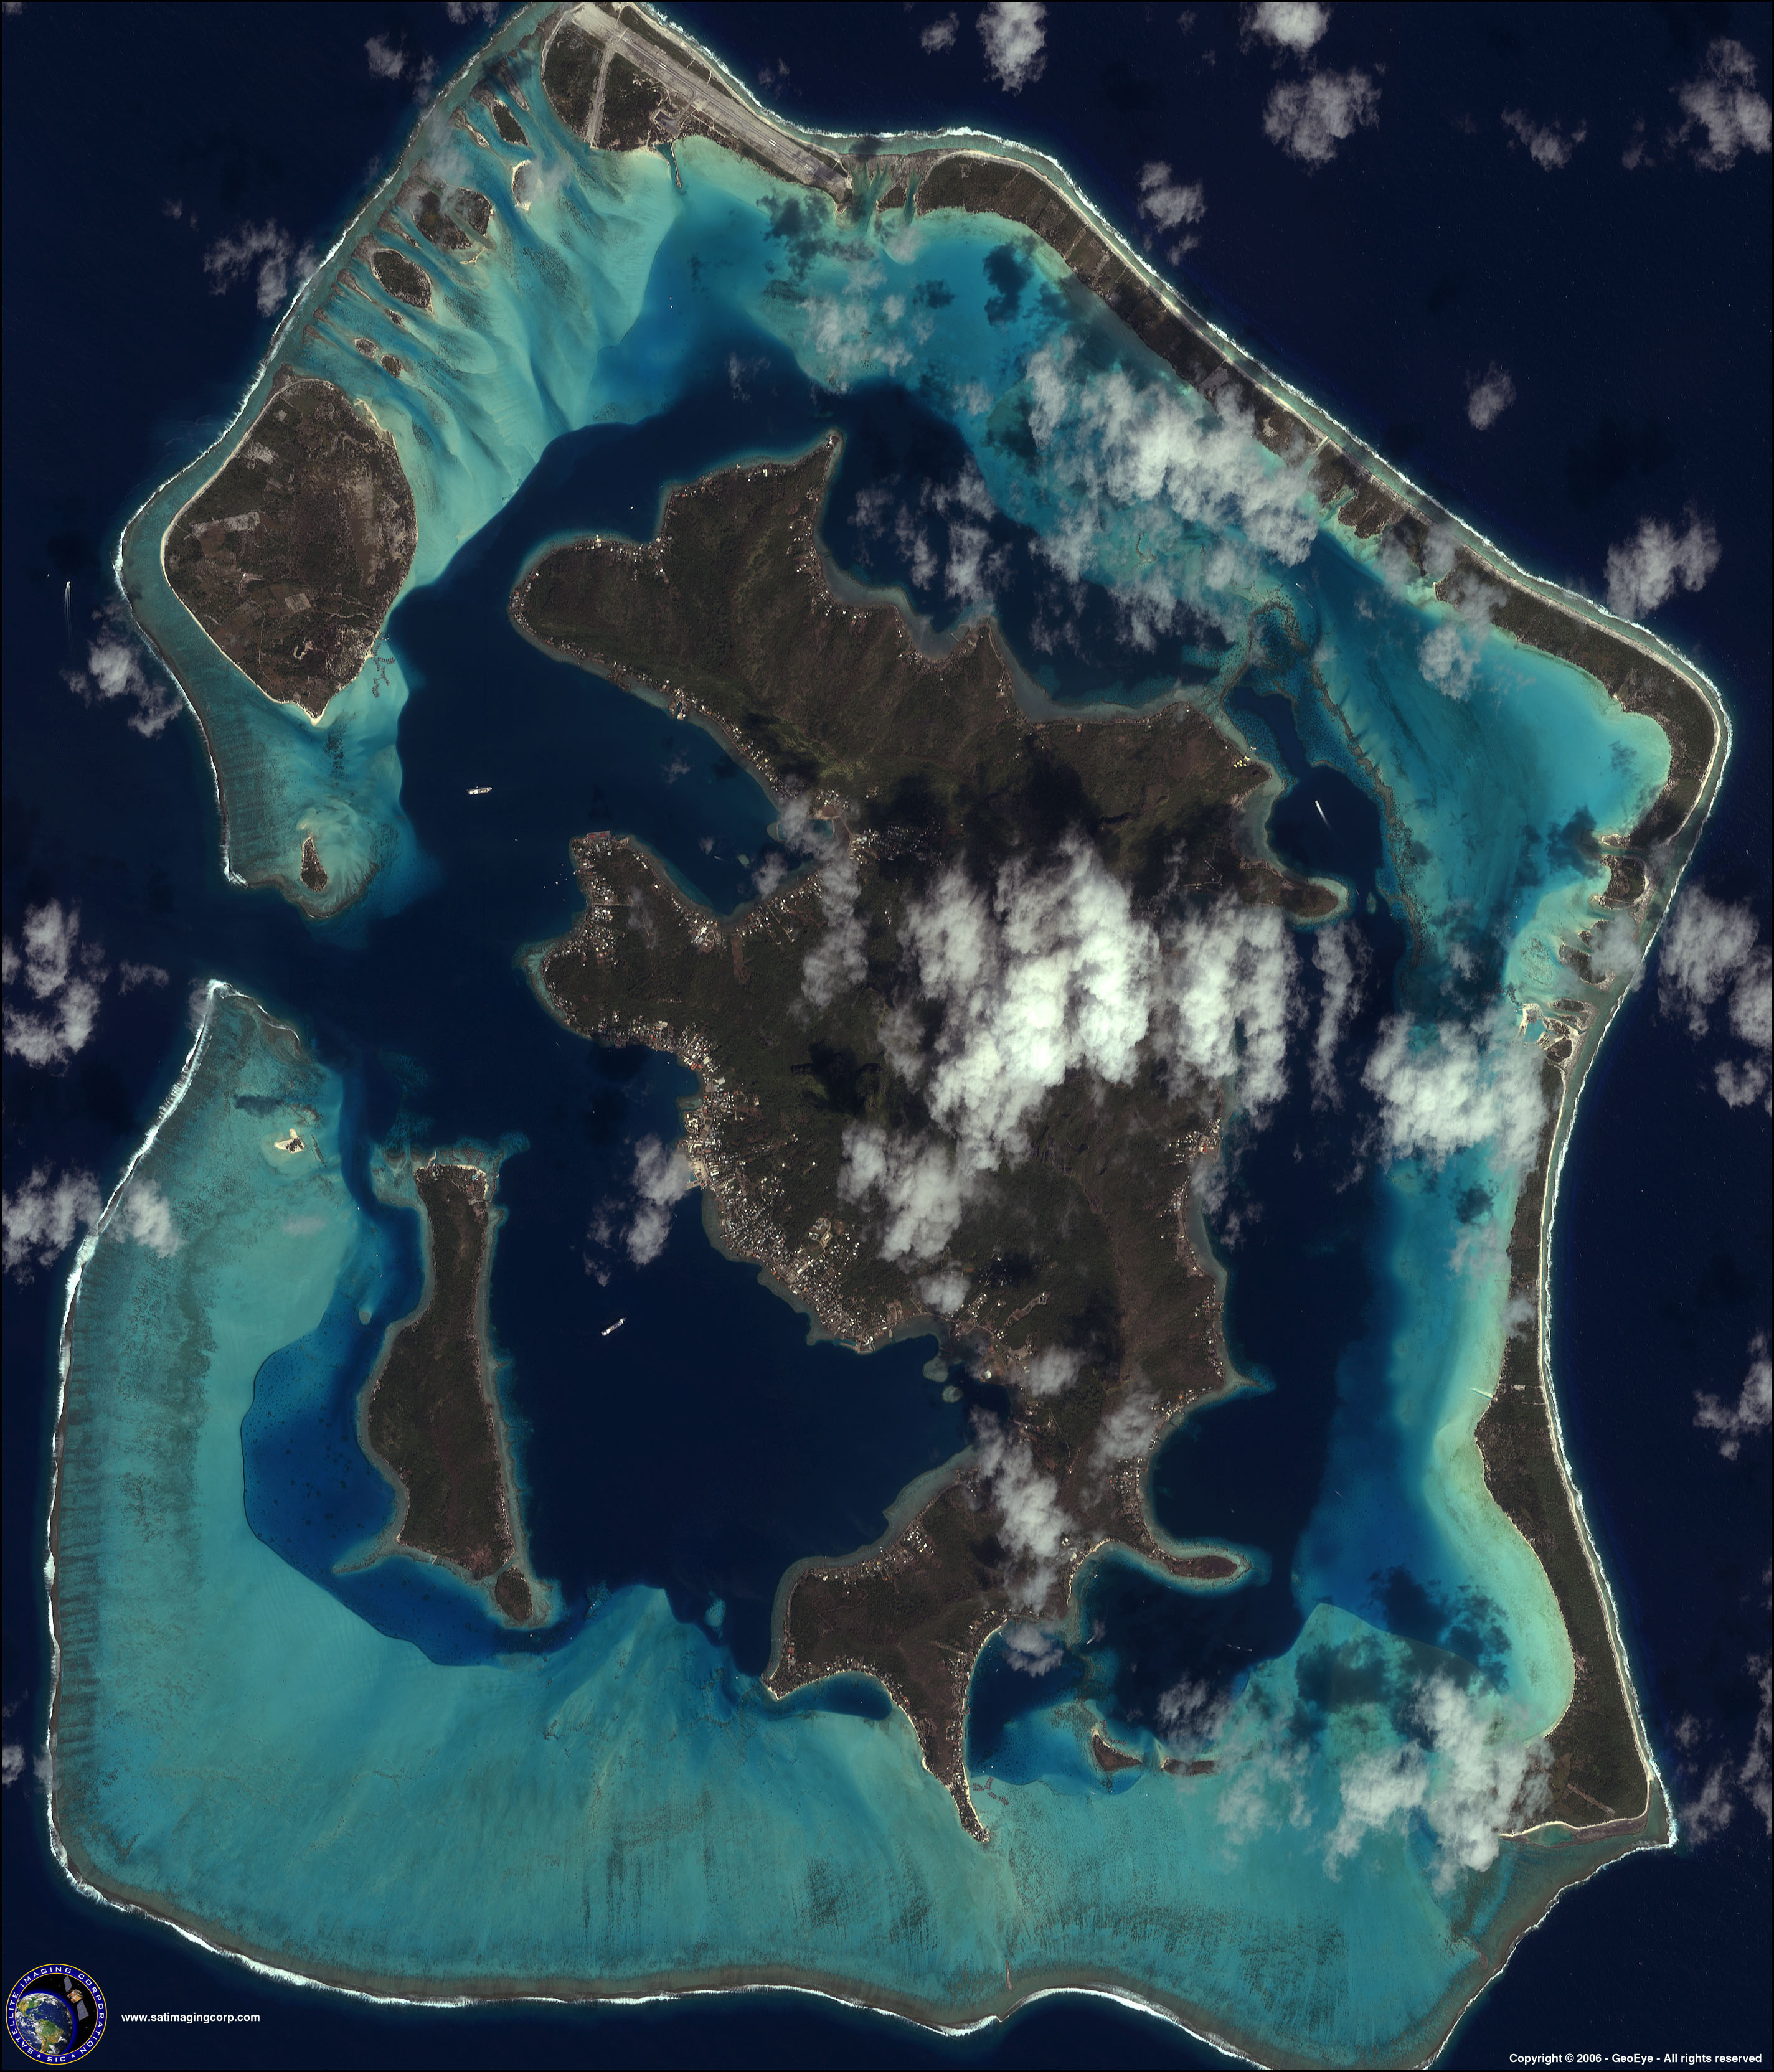 Σύμπλεγμα νησιών bora-bora,Πηγή:ikonos,http://www.satimagingcorp.com/galleryimages/ikonos-high-resolution-satellite-image-bora-bora.jpg